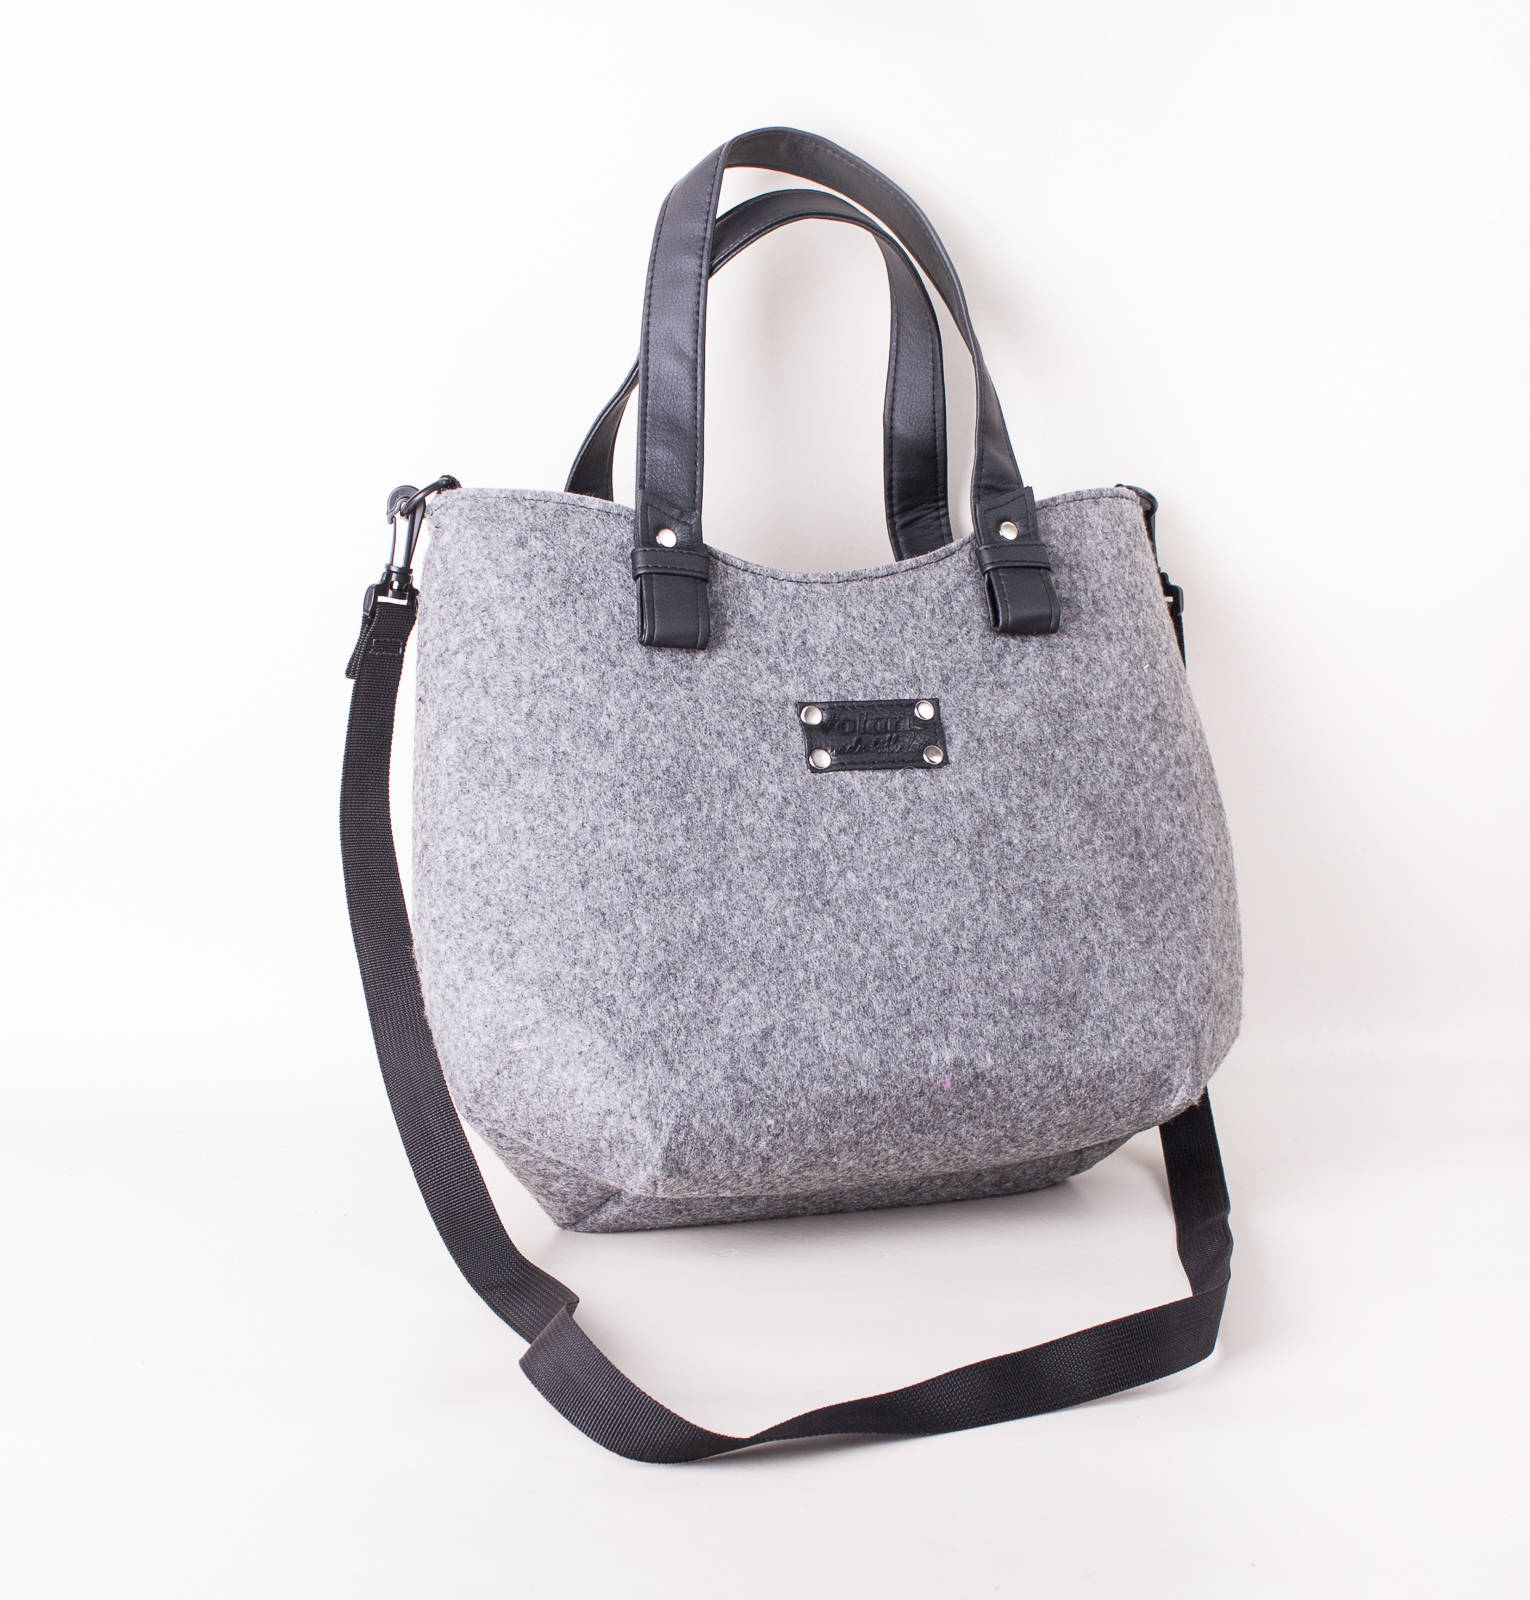 Crossbody bag Handbag Shoulder bag Gift for sister Purse Tote | Etsy